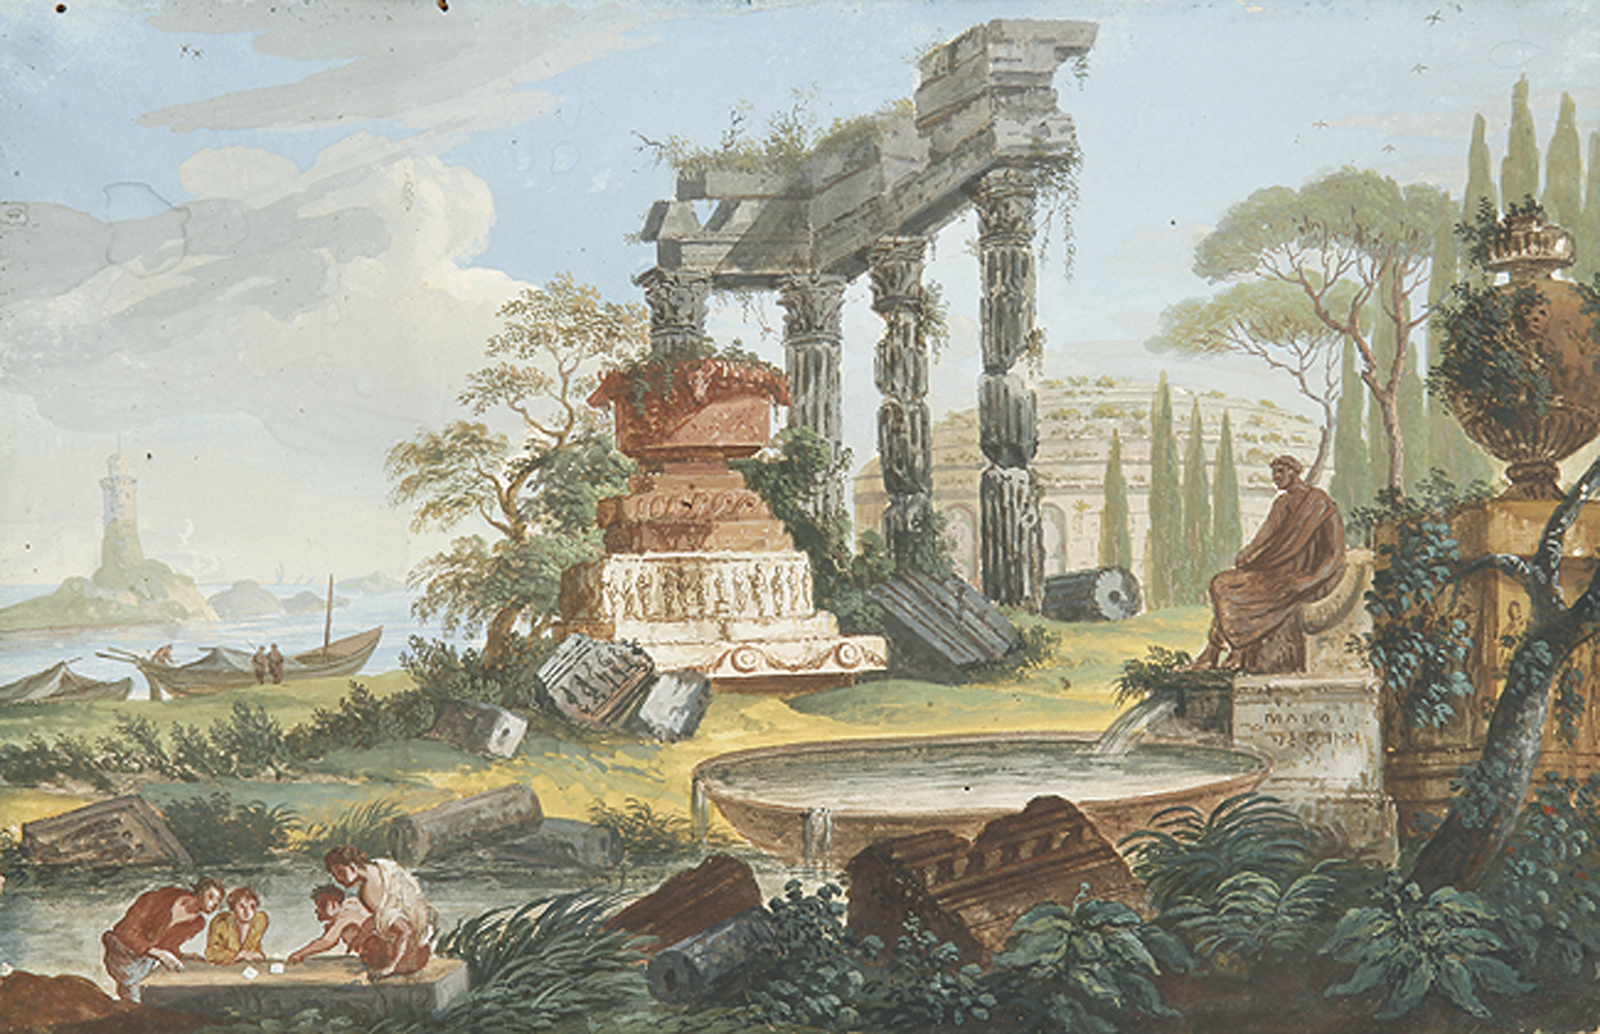 Würfelspieler vor antiker Ruine bei einem Leuchtturm - Bei Ruinen Rastende und Fischer bei einem Rundgebäude.